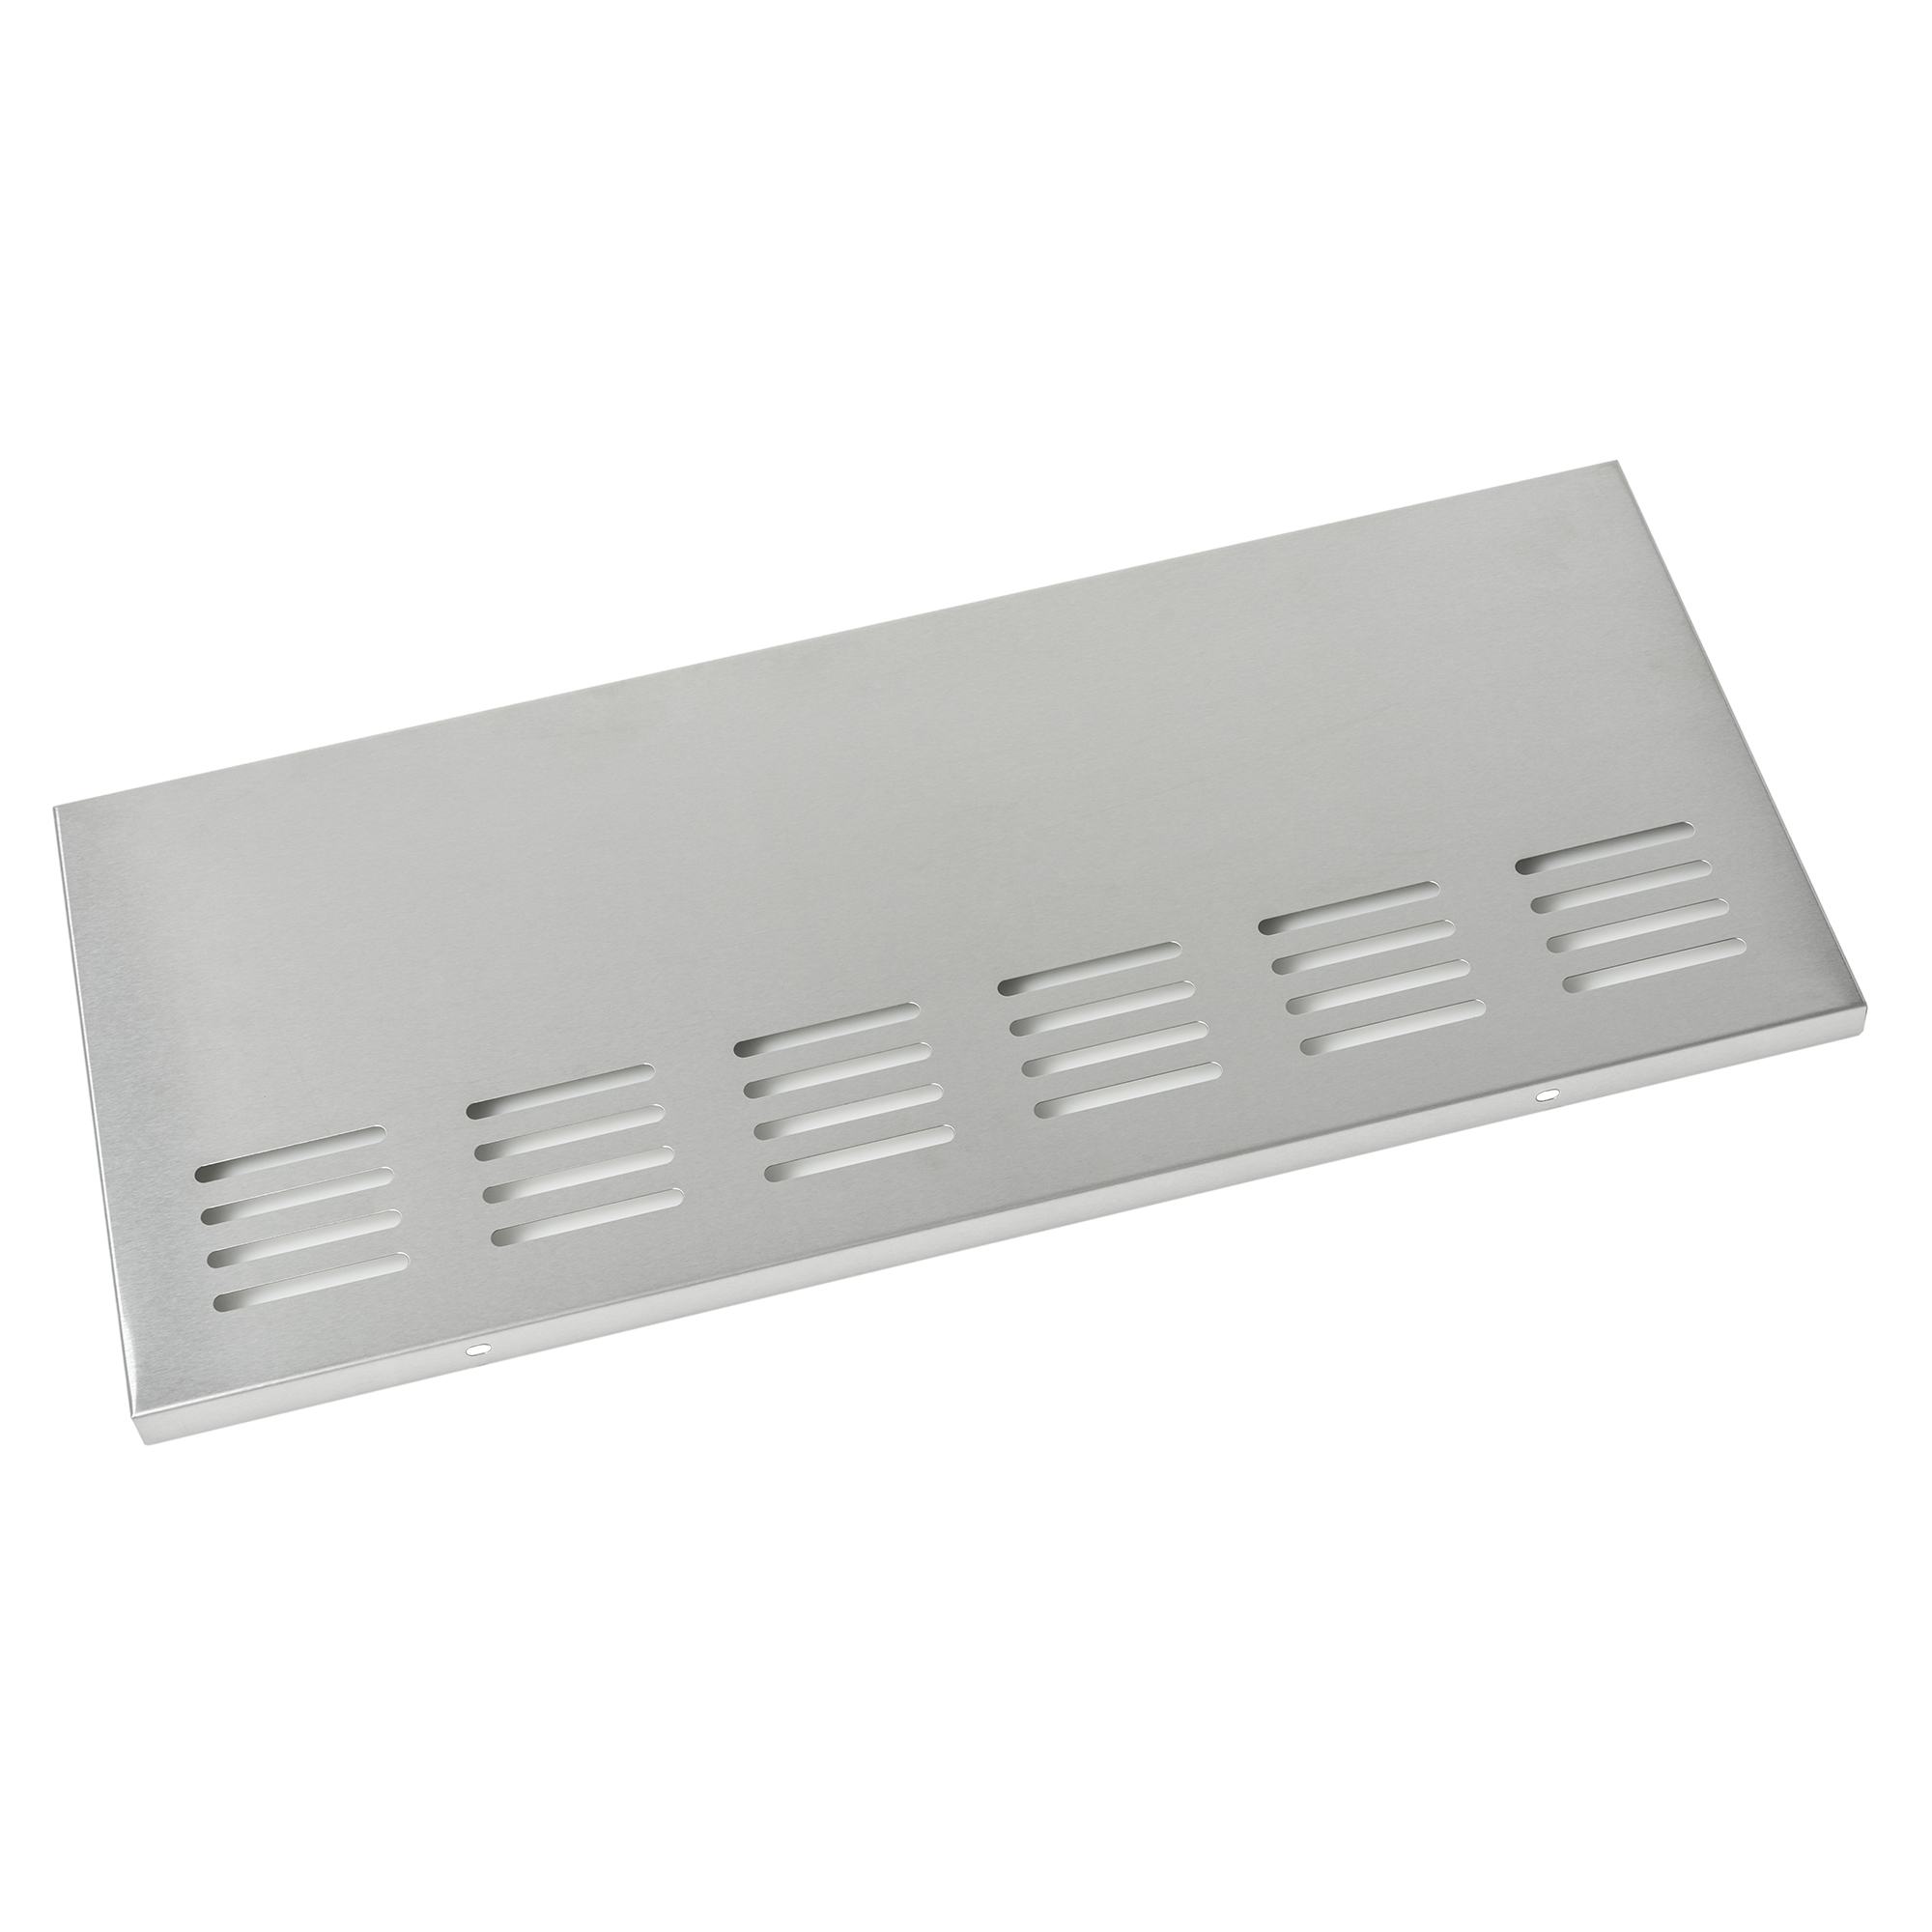 Cabinet back panel Artiso G4-SB stainless steel